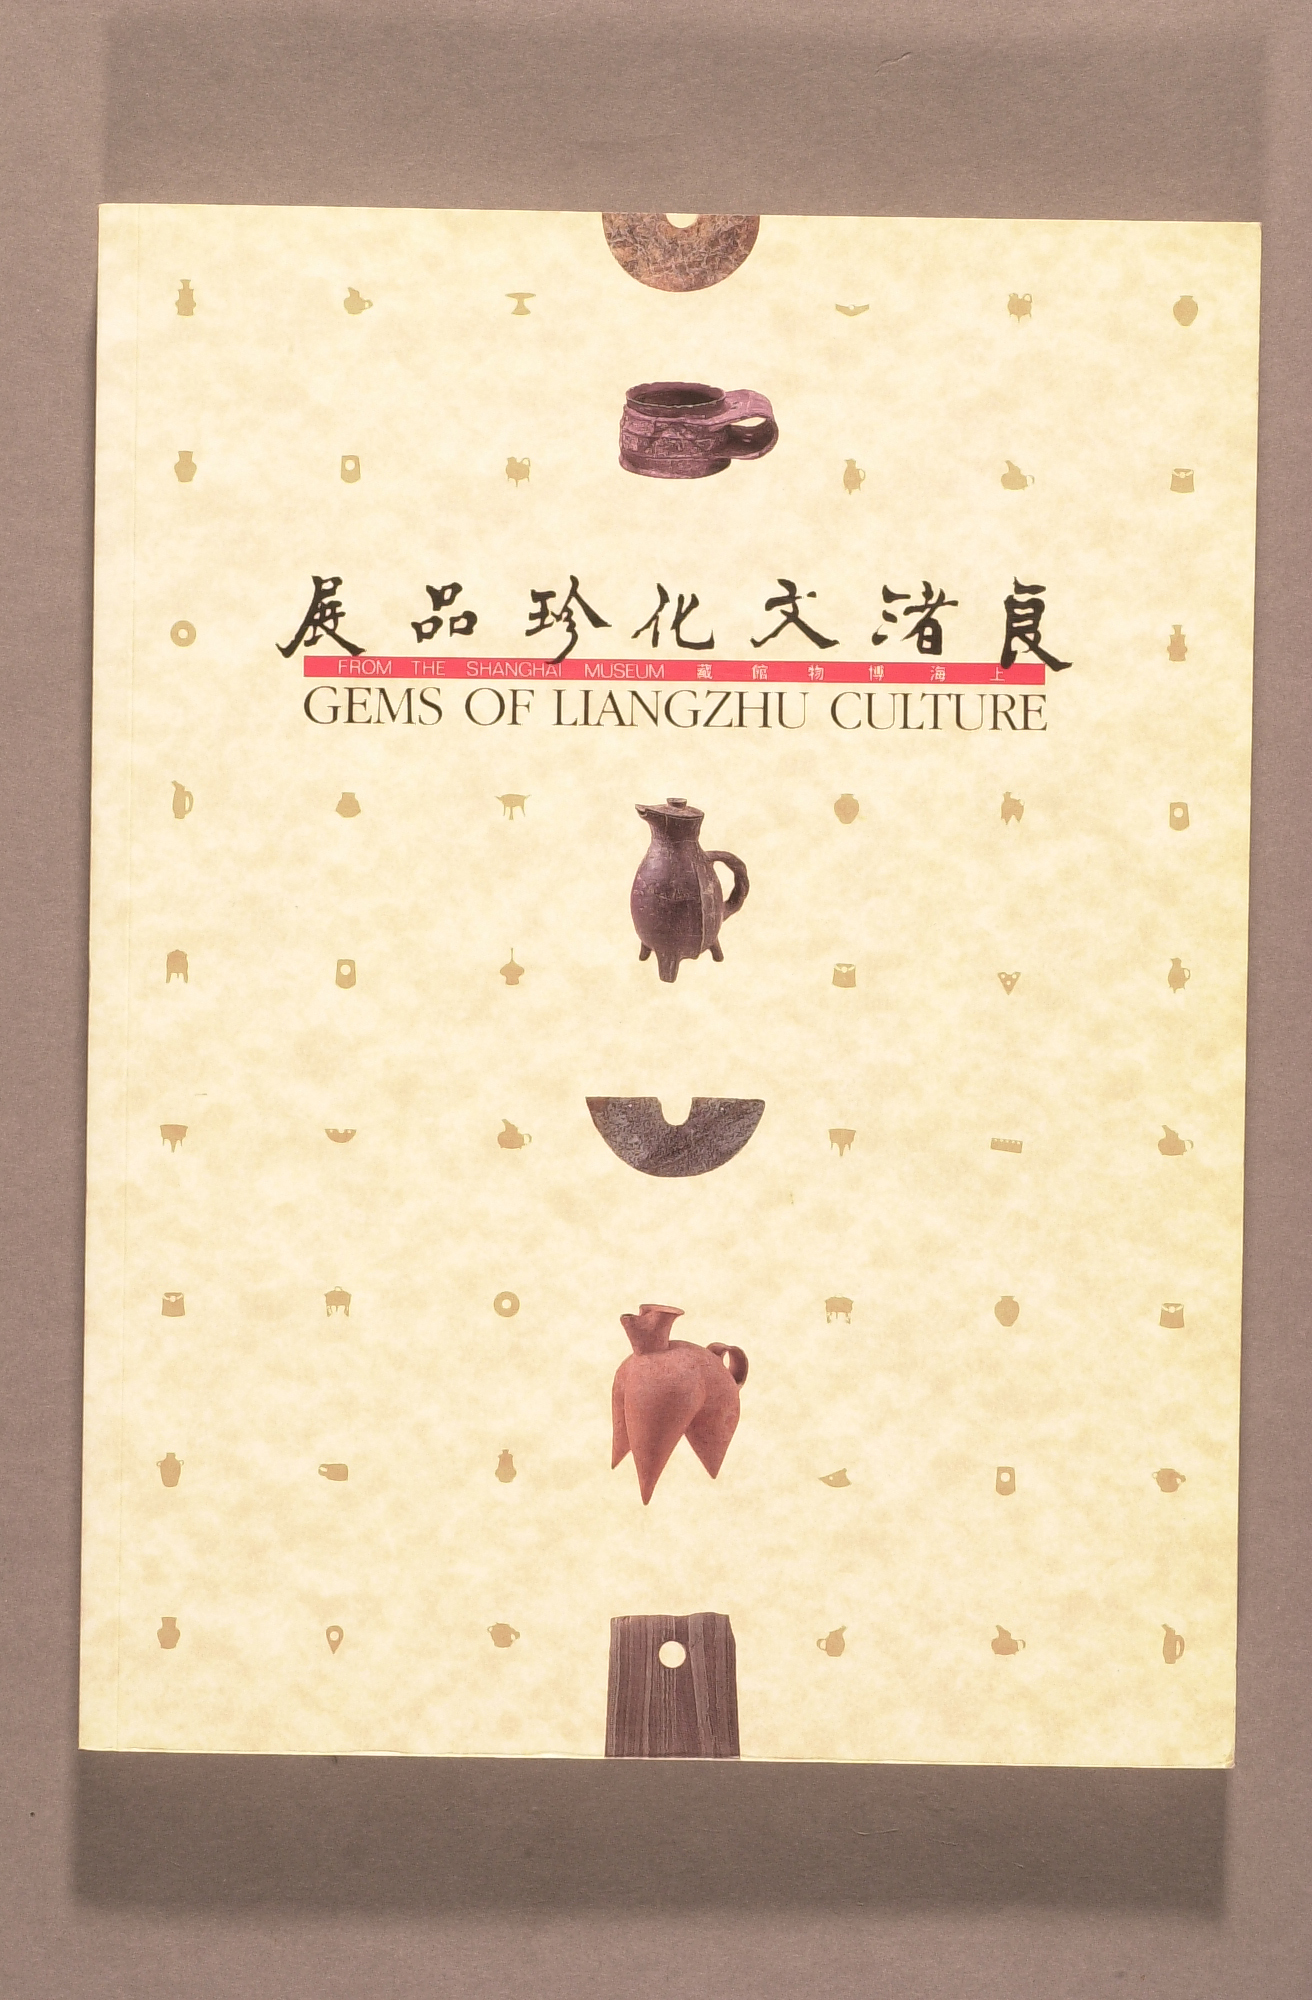 上海博物馆藏良渚文化珍品展